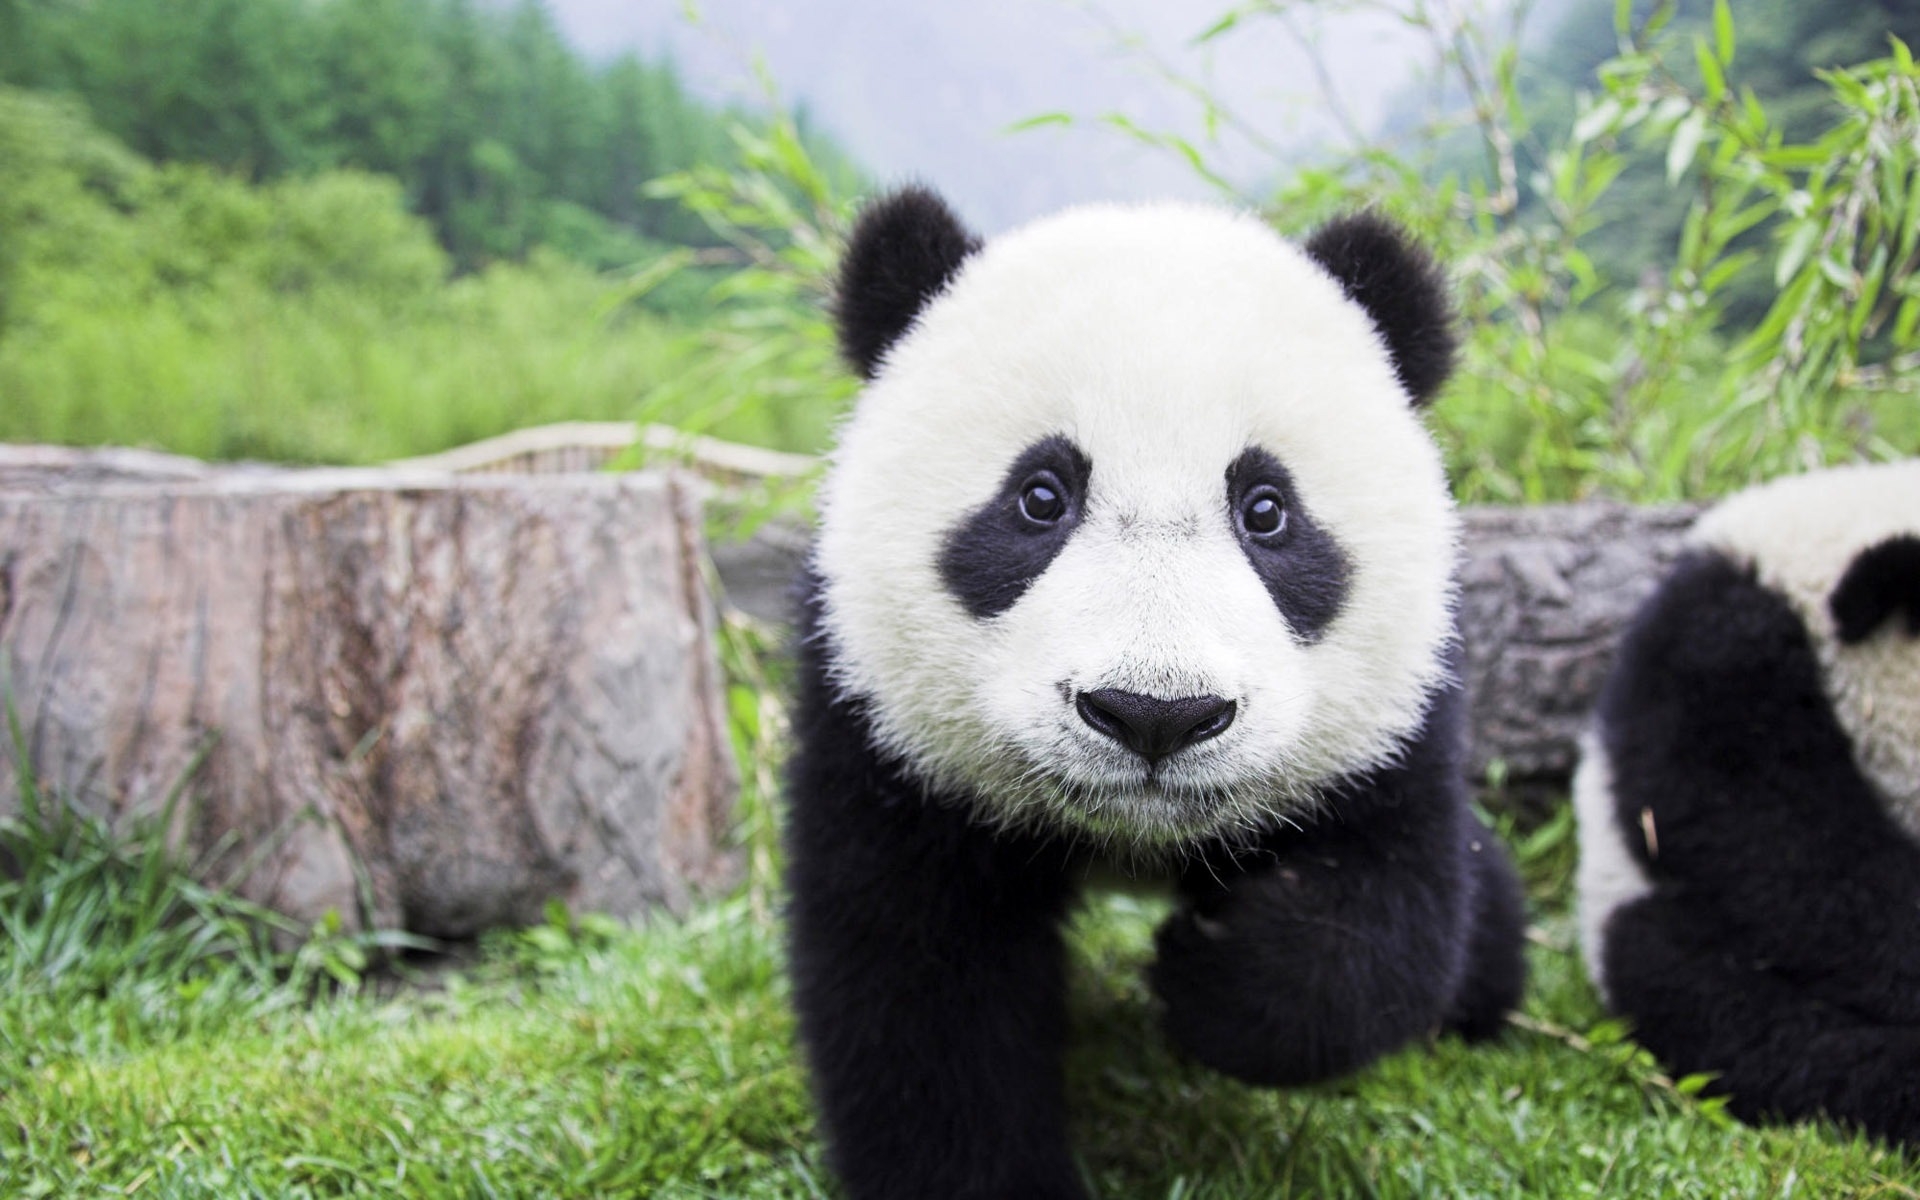 Beautiful Baby Panda for 1920 x 1200 widescreen resolution